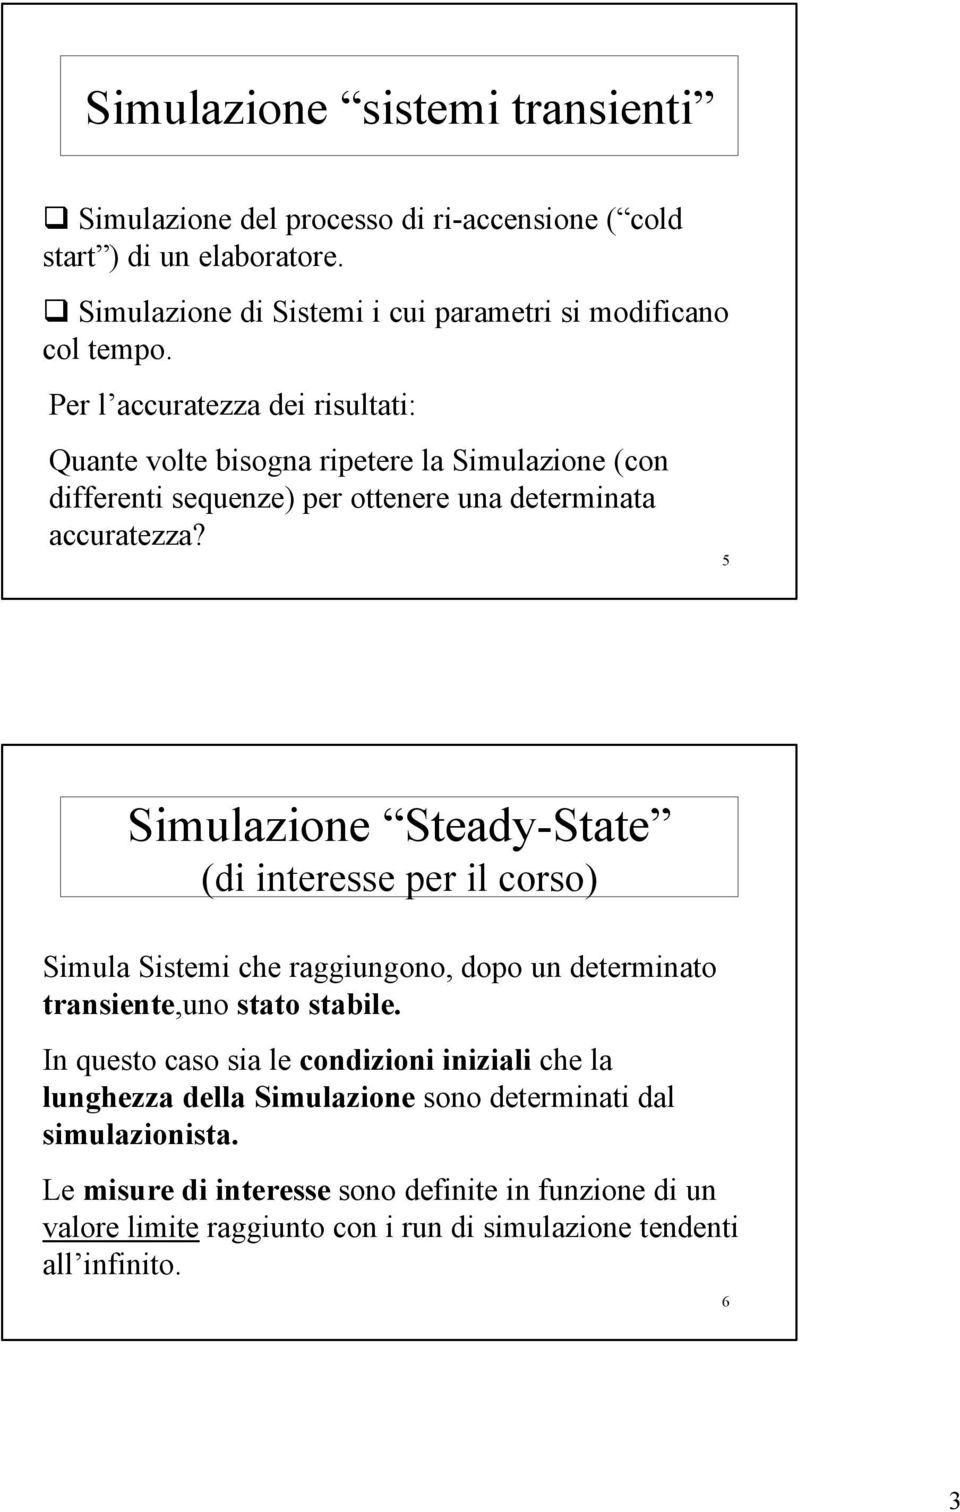 5 Simulazioe Steady-State (di iteresse per il corso) Simula Sistemi che raggiugoo, dopo u determiato trasiete,uo stato stabile.